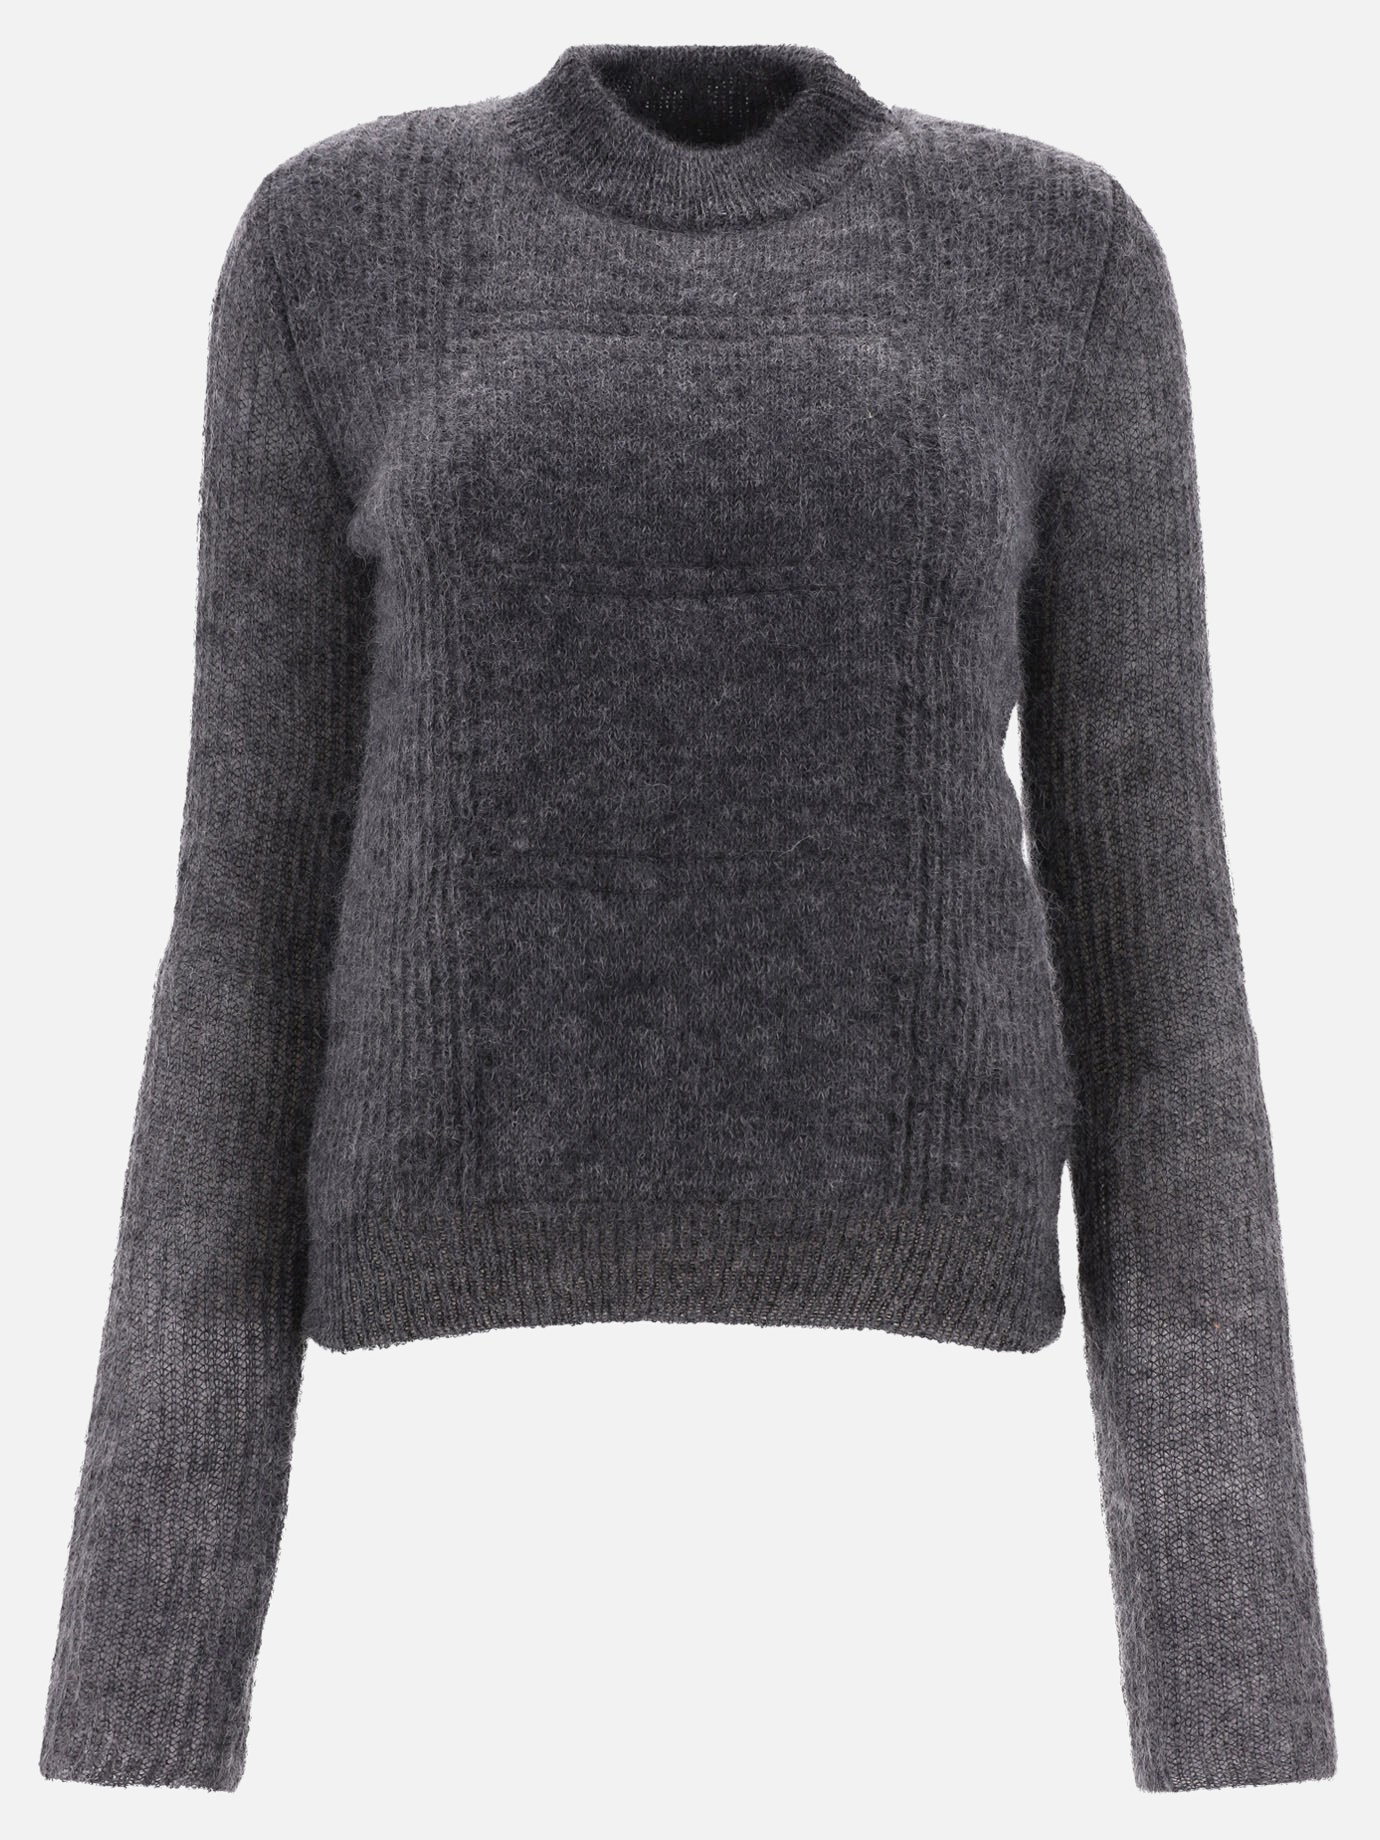  Fiocchi  sweaterby Max Mara - 3